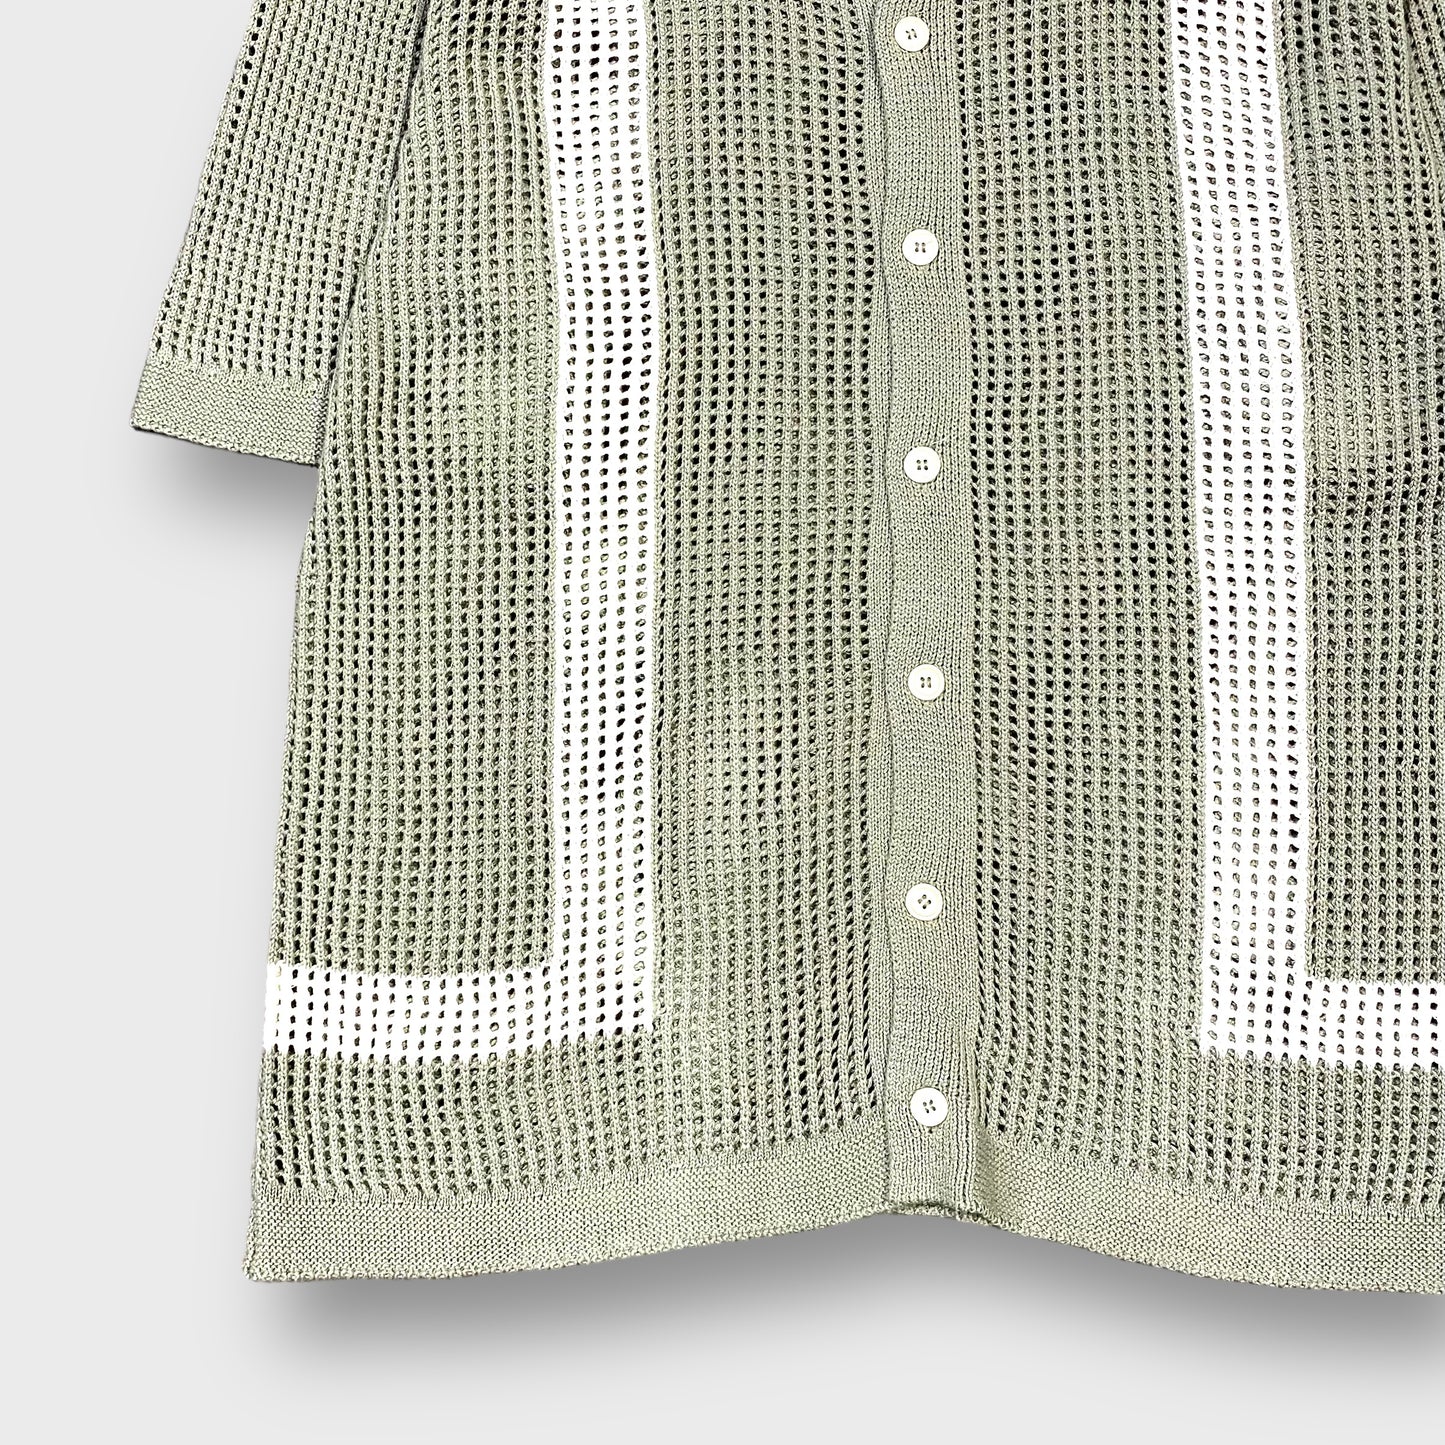 "Massive" s/s mesh knit shirt